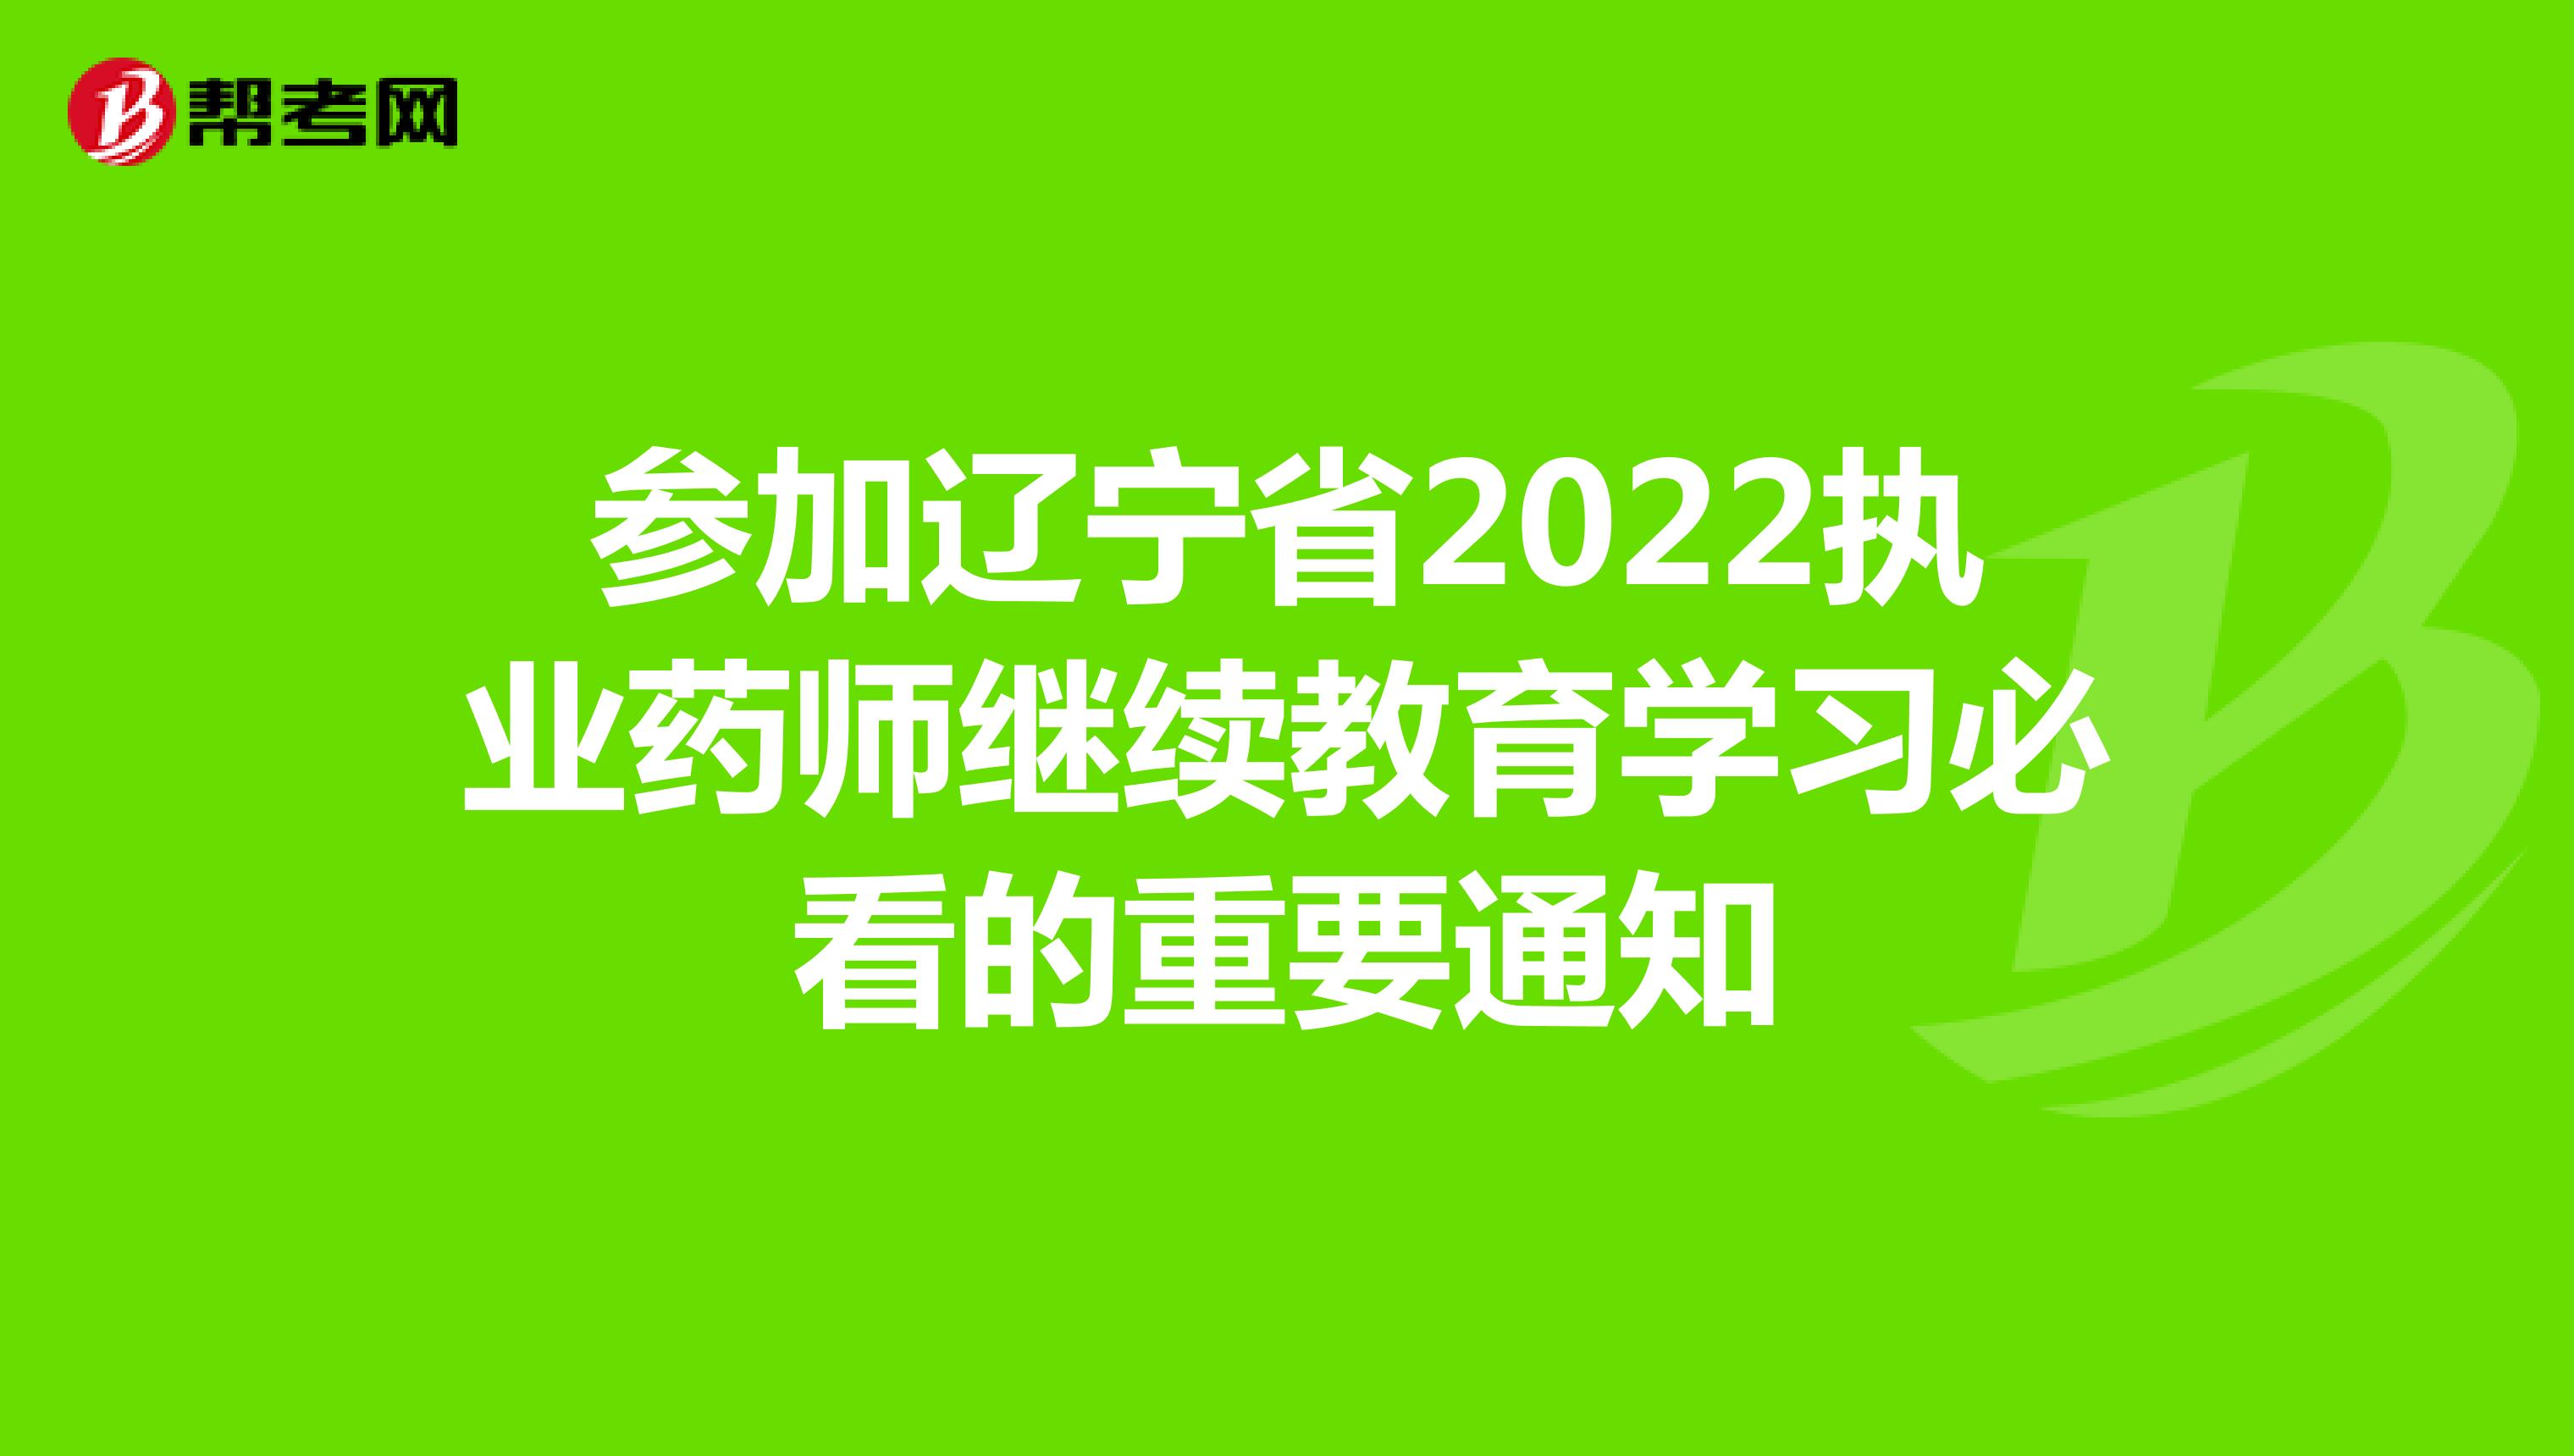 参加辽宁省2022执业药师继续教育学习必看的重要通知